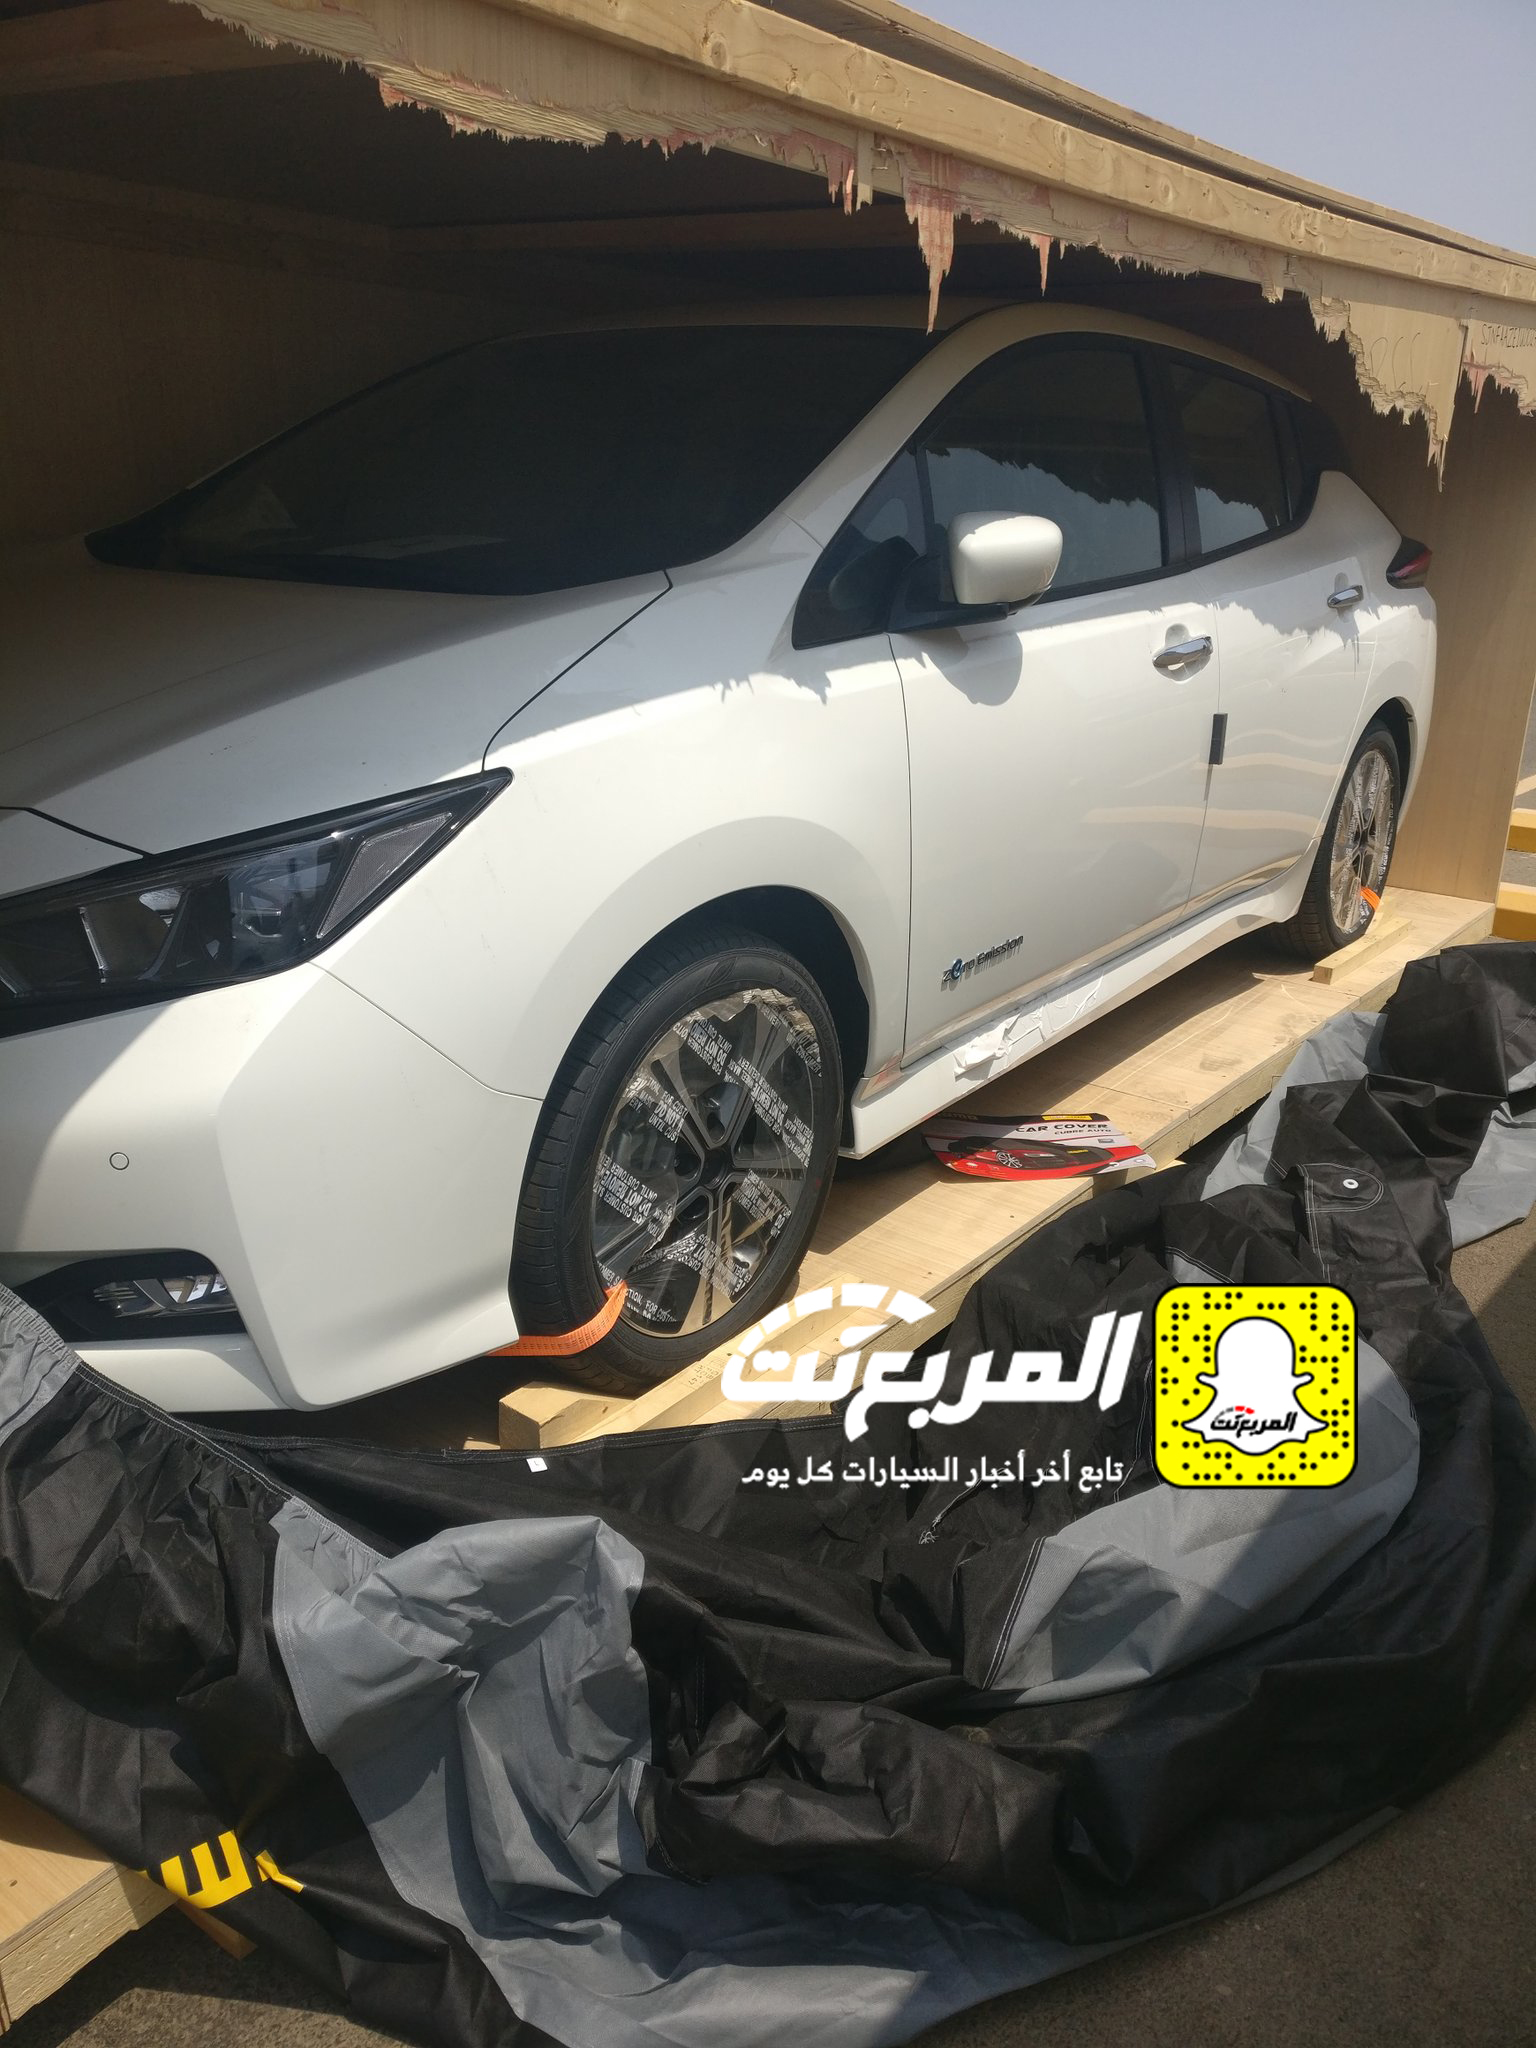 “بالصور” وصول سيارات نيسان ليف الكهربائية الى السعودية لإجراء اختبارات عليها